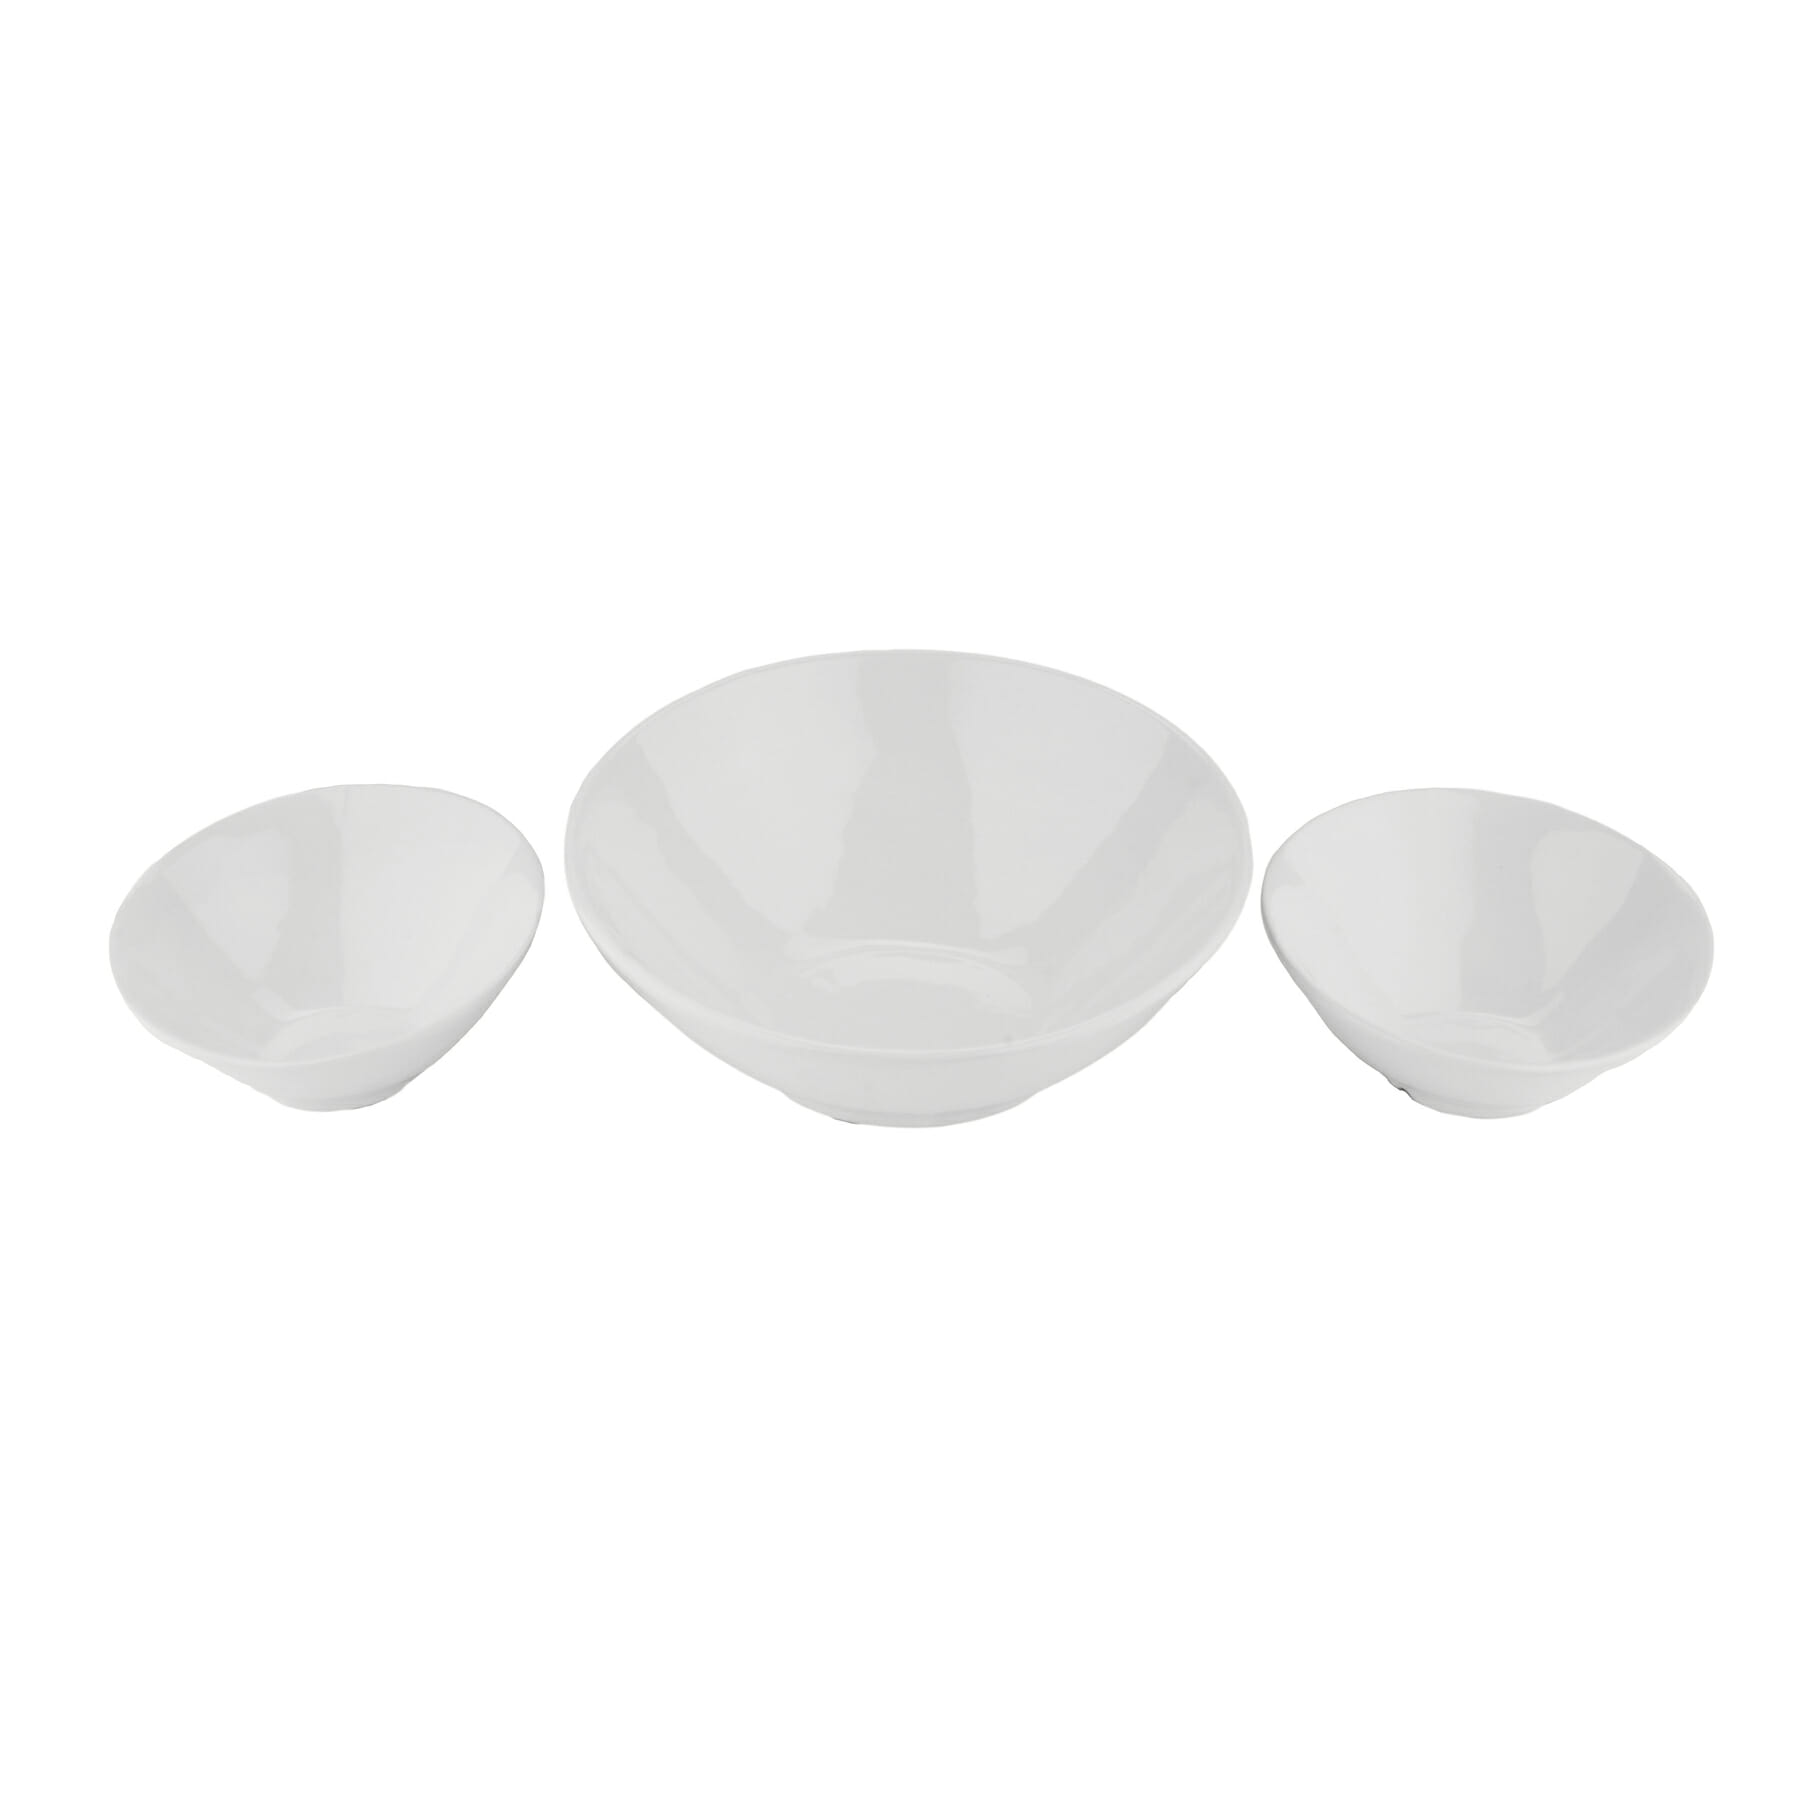 Set of 3 Ceramic Cascading Bowls, 1.1 qt., 16 oz., 10 oz.